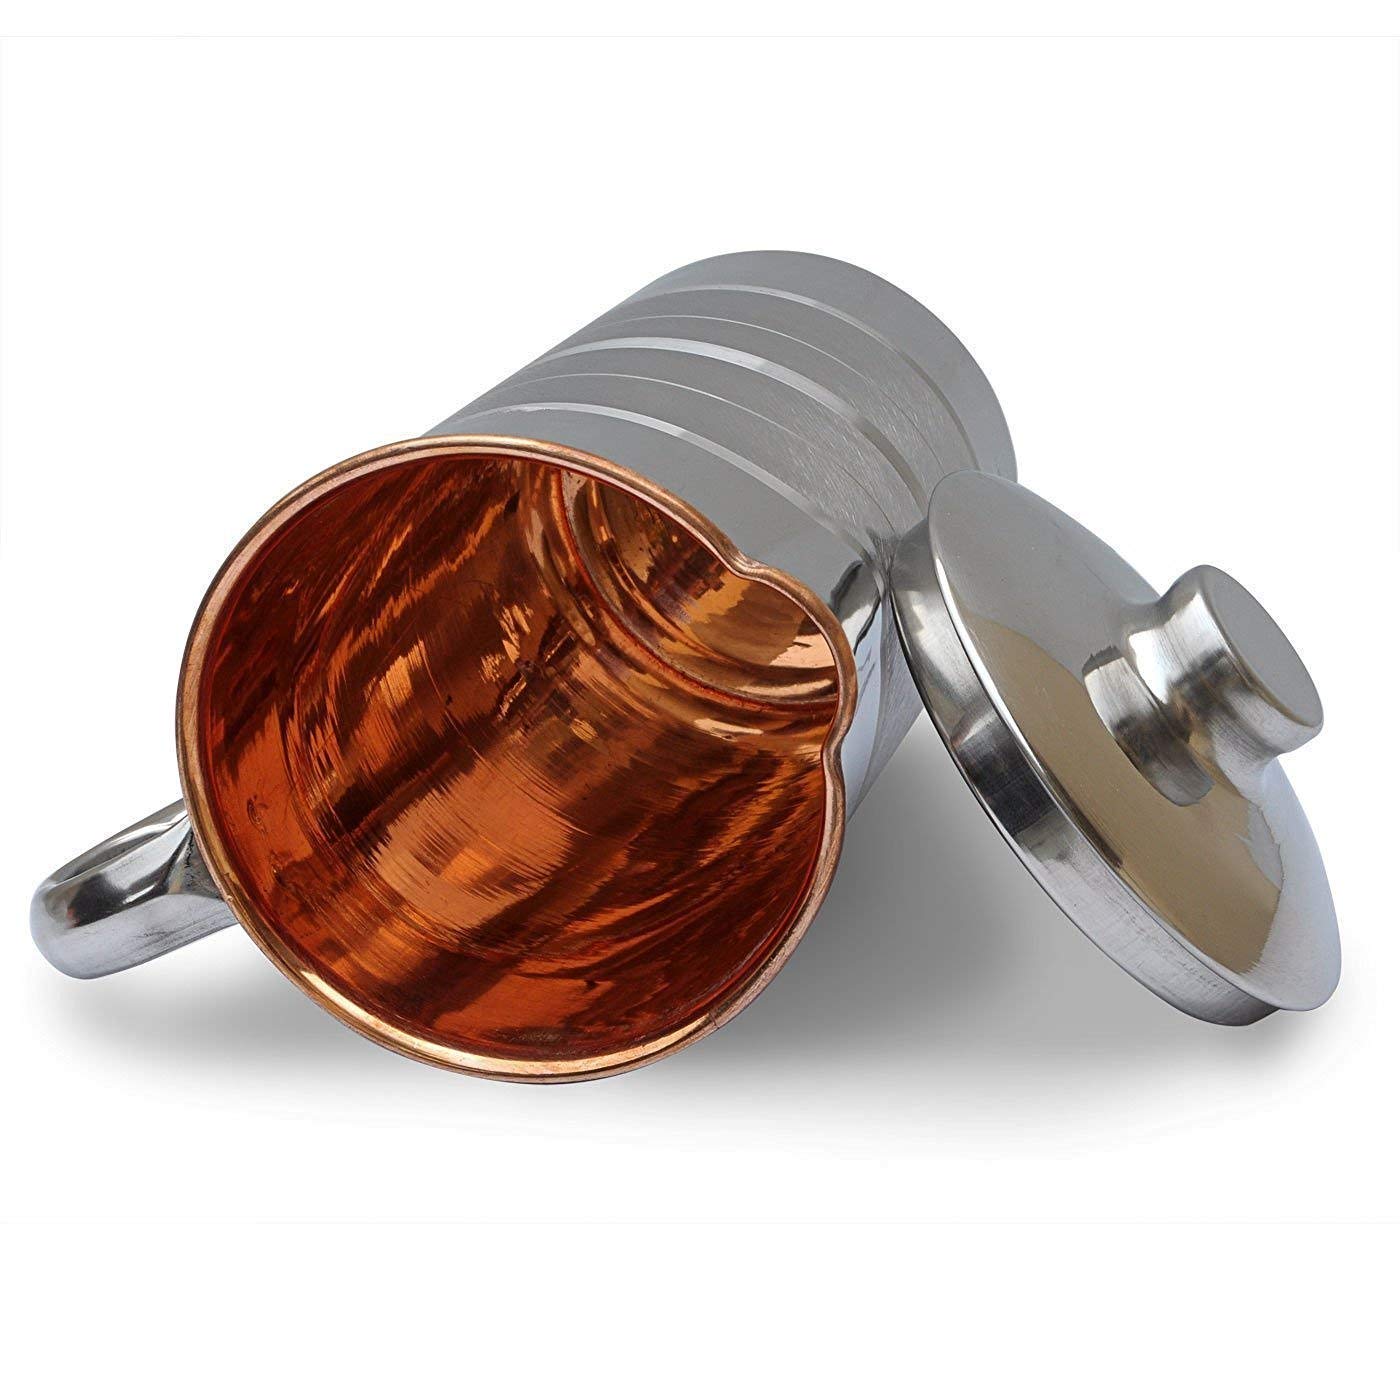 I-Copper Luxury Steel Copper Water Jug 1.2L